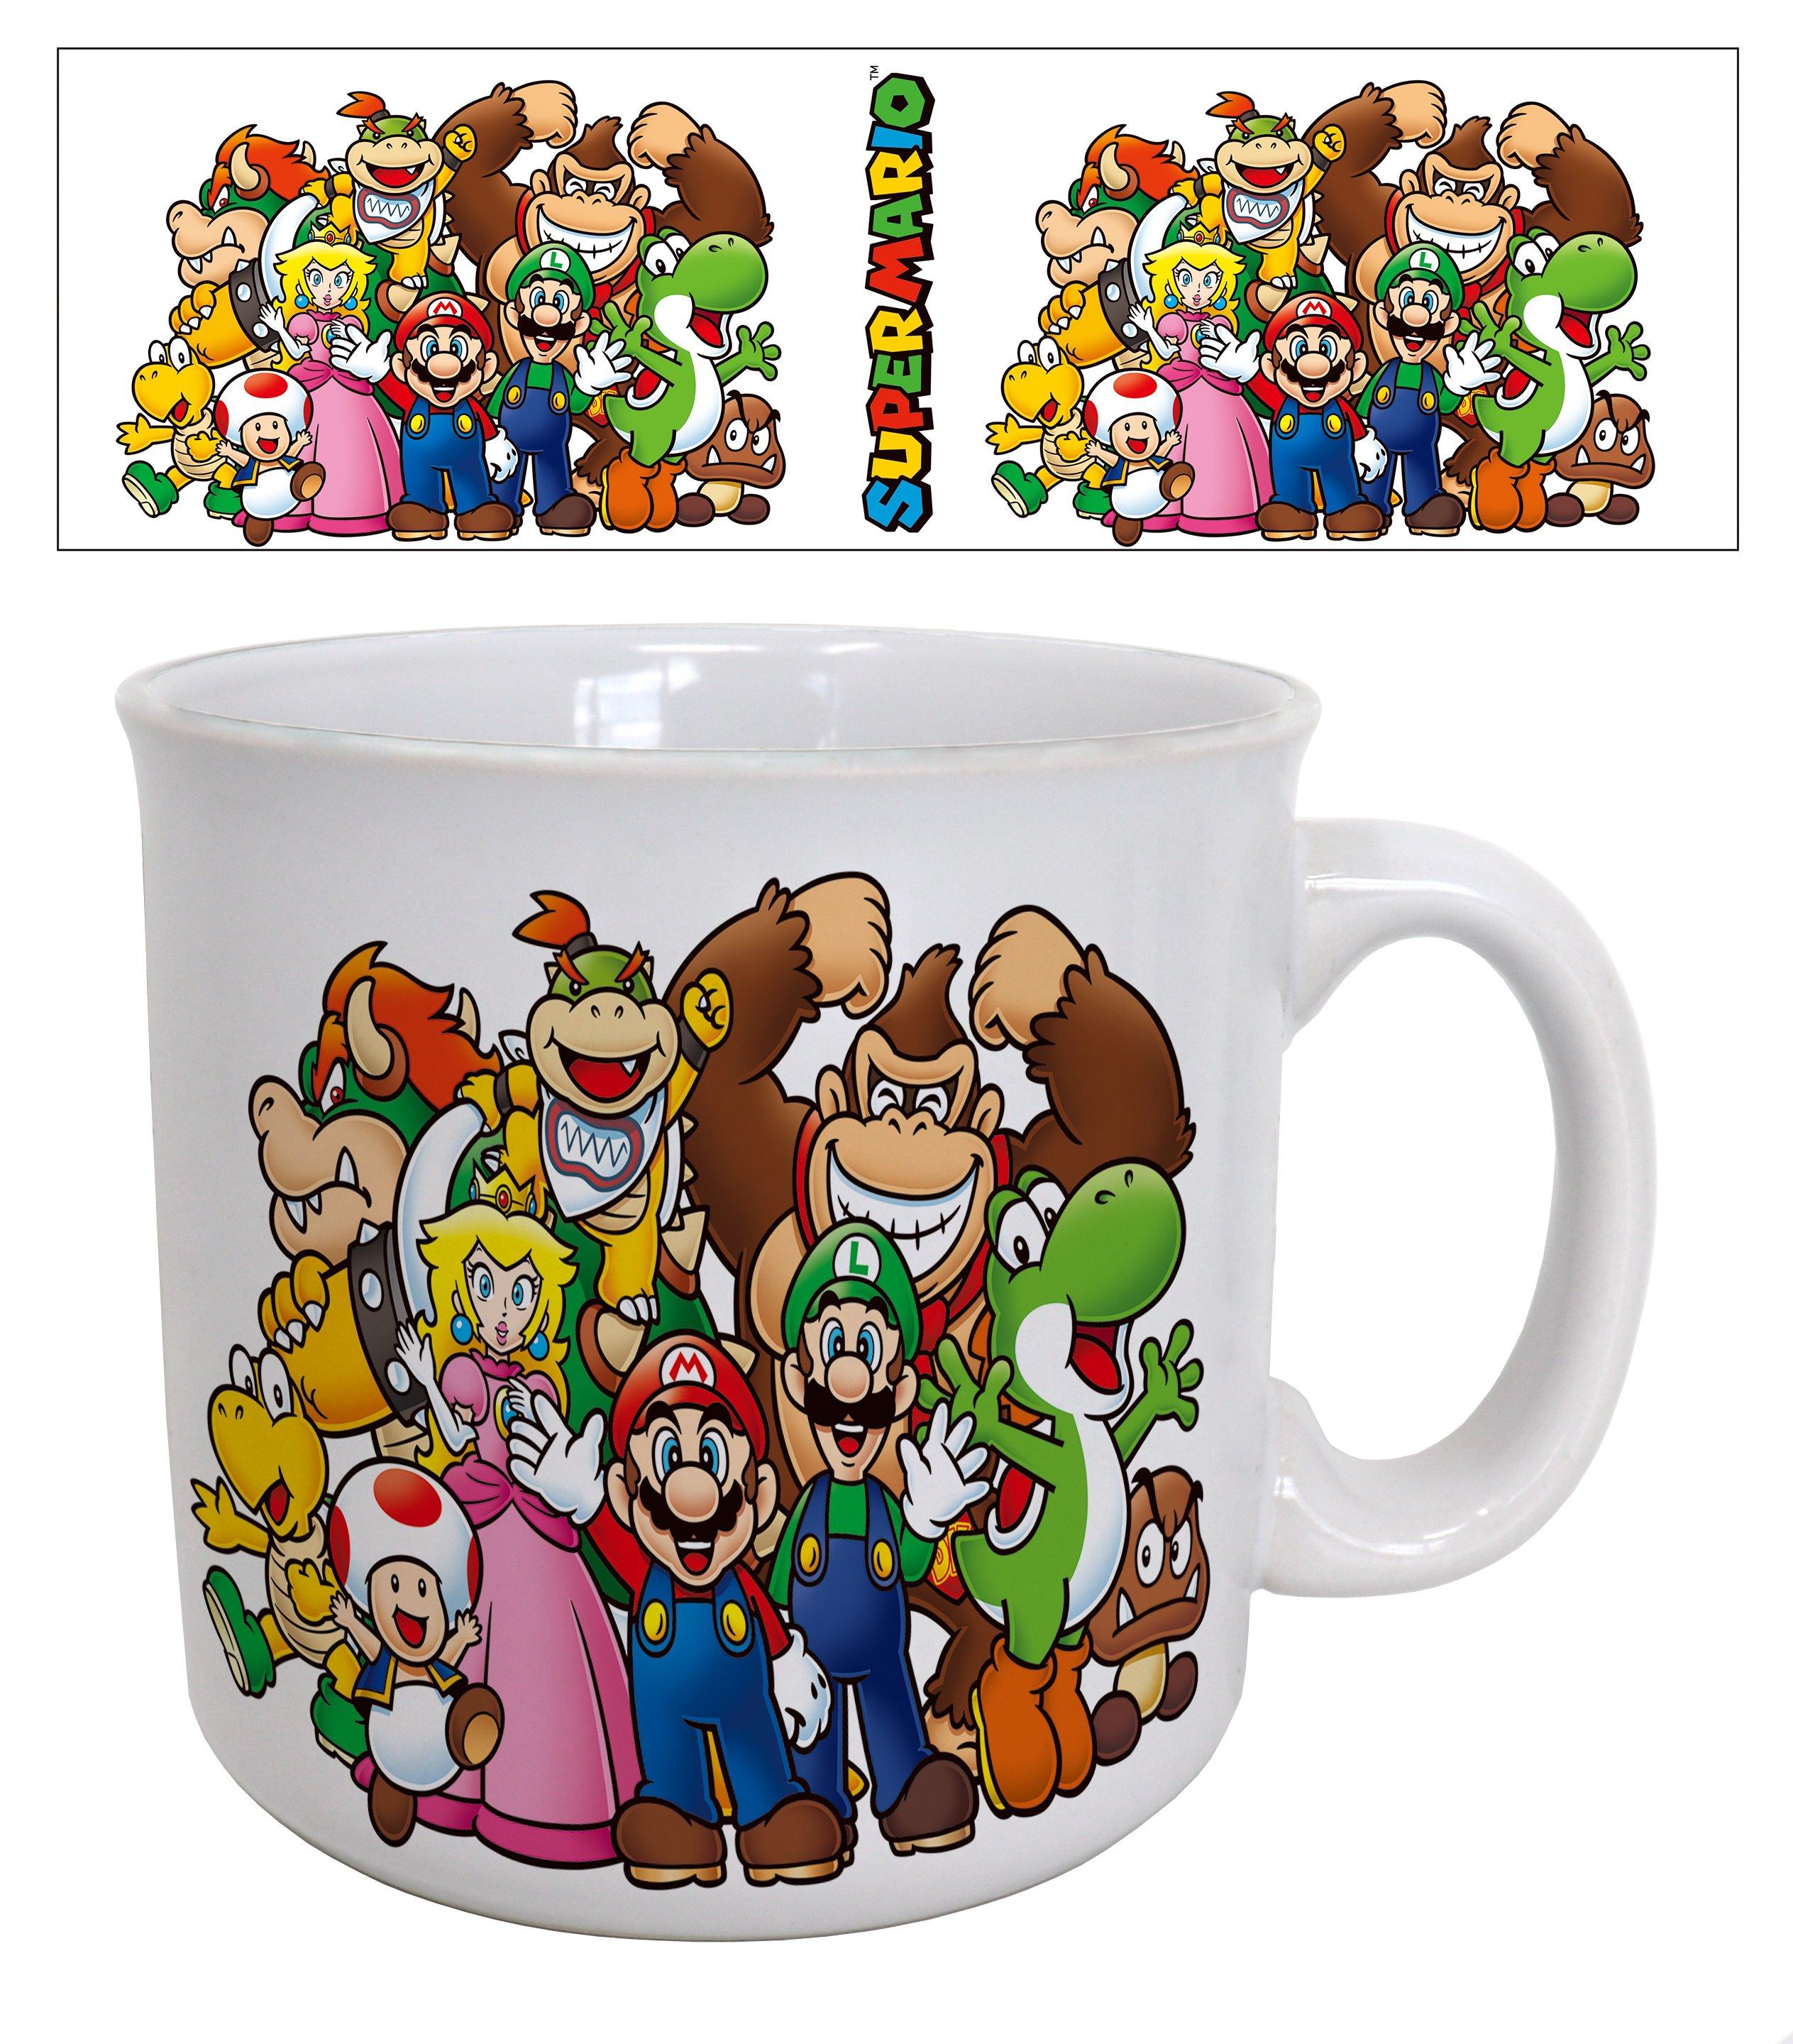 https://media.gamestop.com/i/gamestop/20004139/Super-Mario---Mario-and-Friends-20oz-Mug